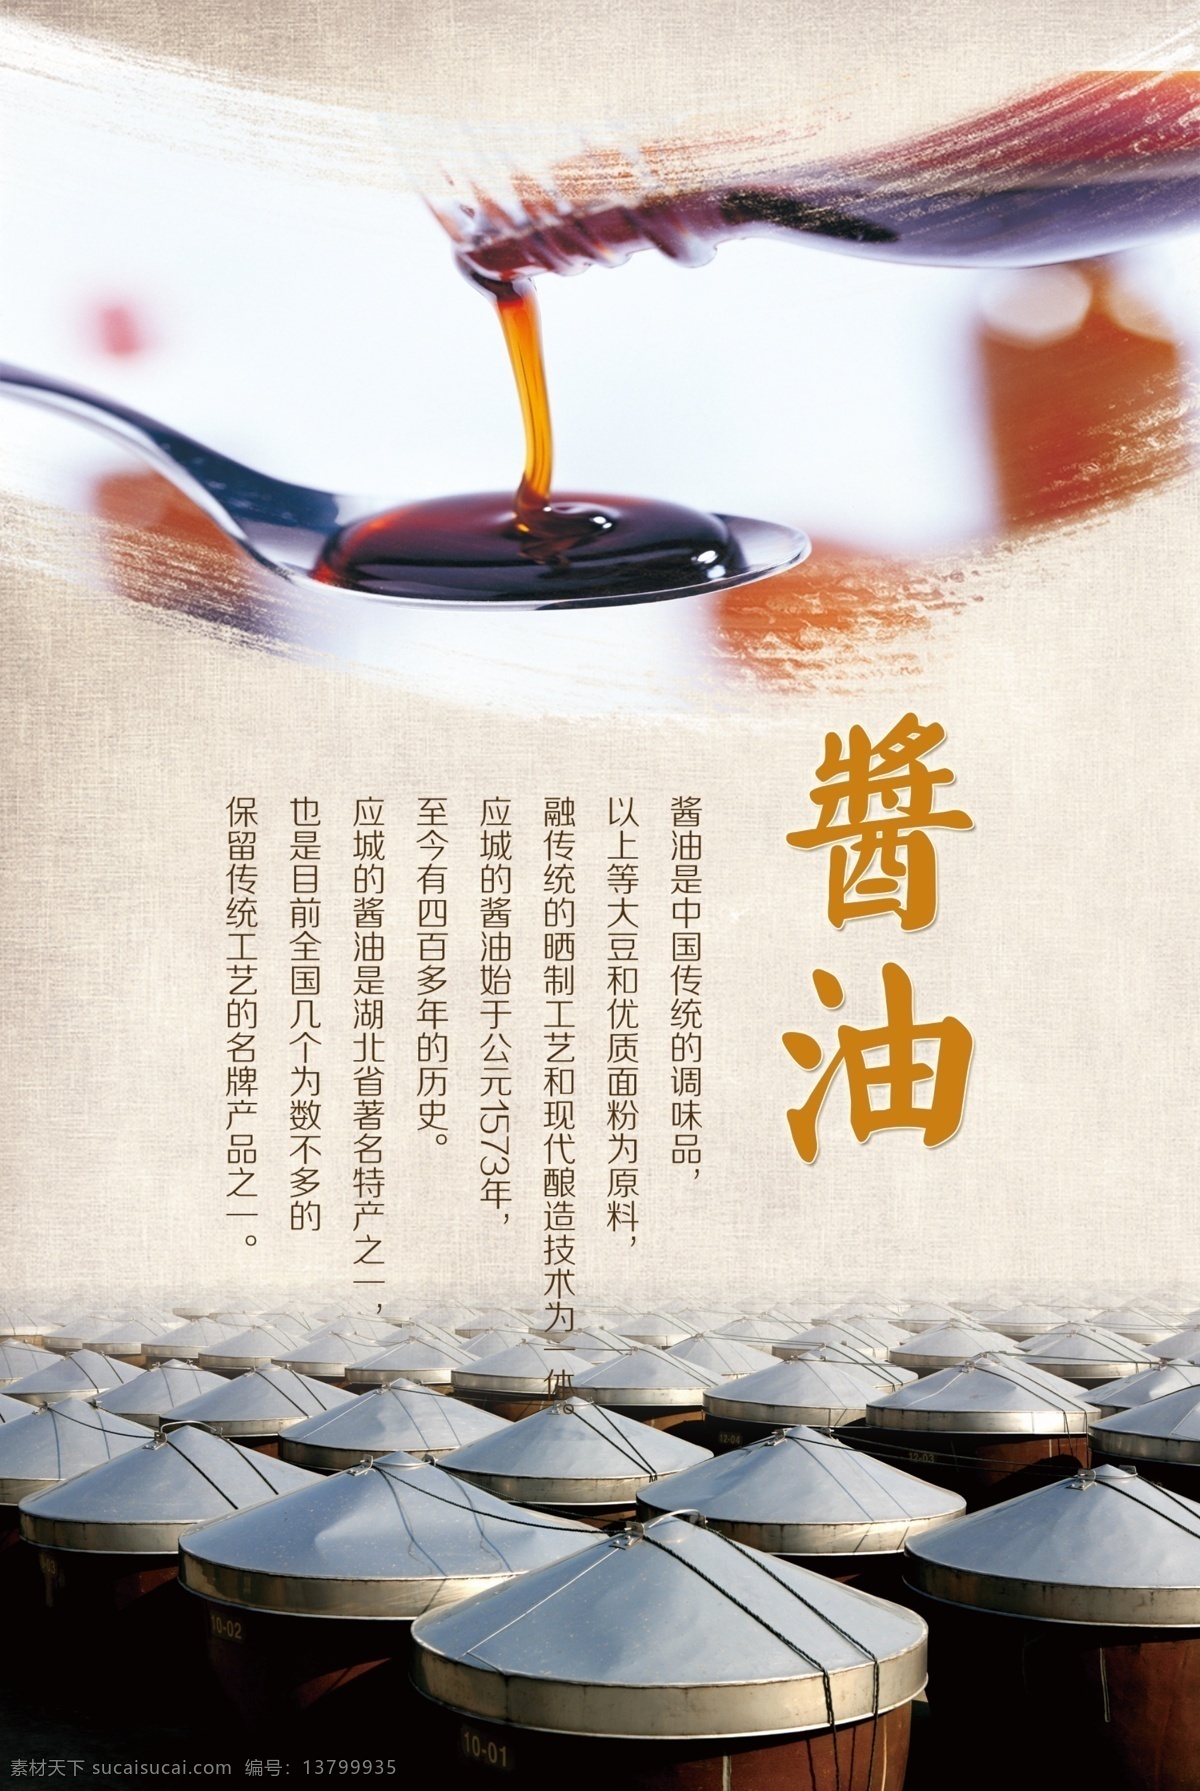 酱油 海报 广告 调料 中国 风 食品 土特产 作料 农副产品 汤 勺子 中国风 蒙古包 大气 高清